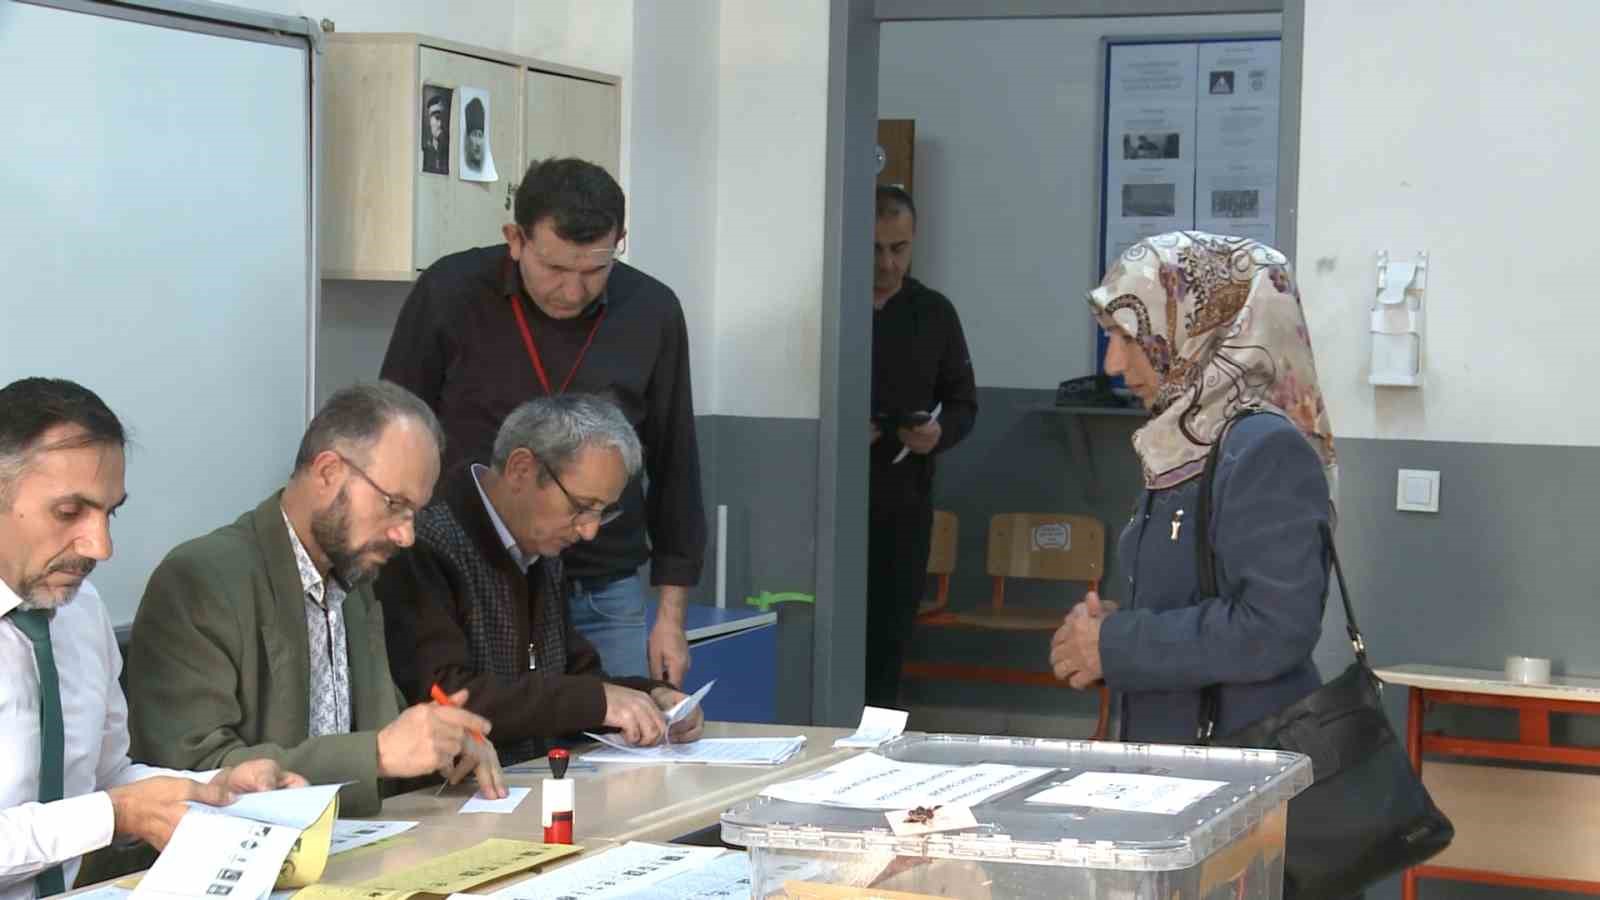 Bursa’da oy kullanımı başladı